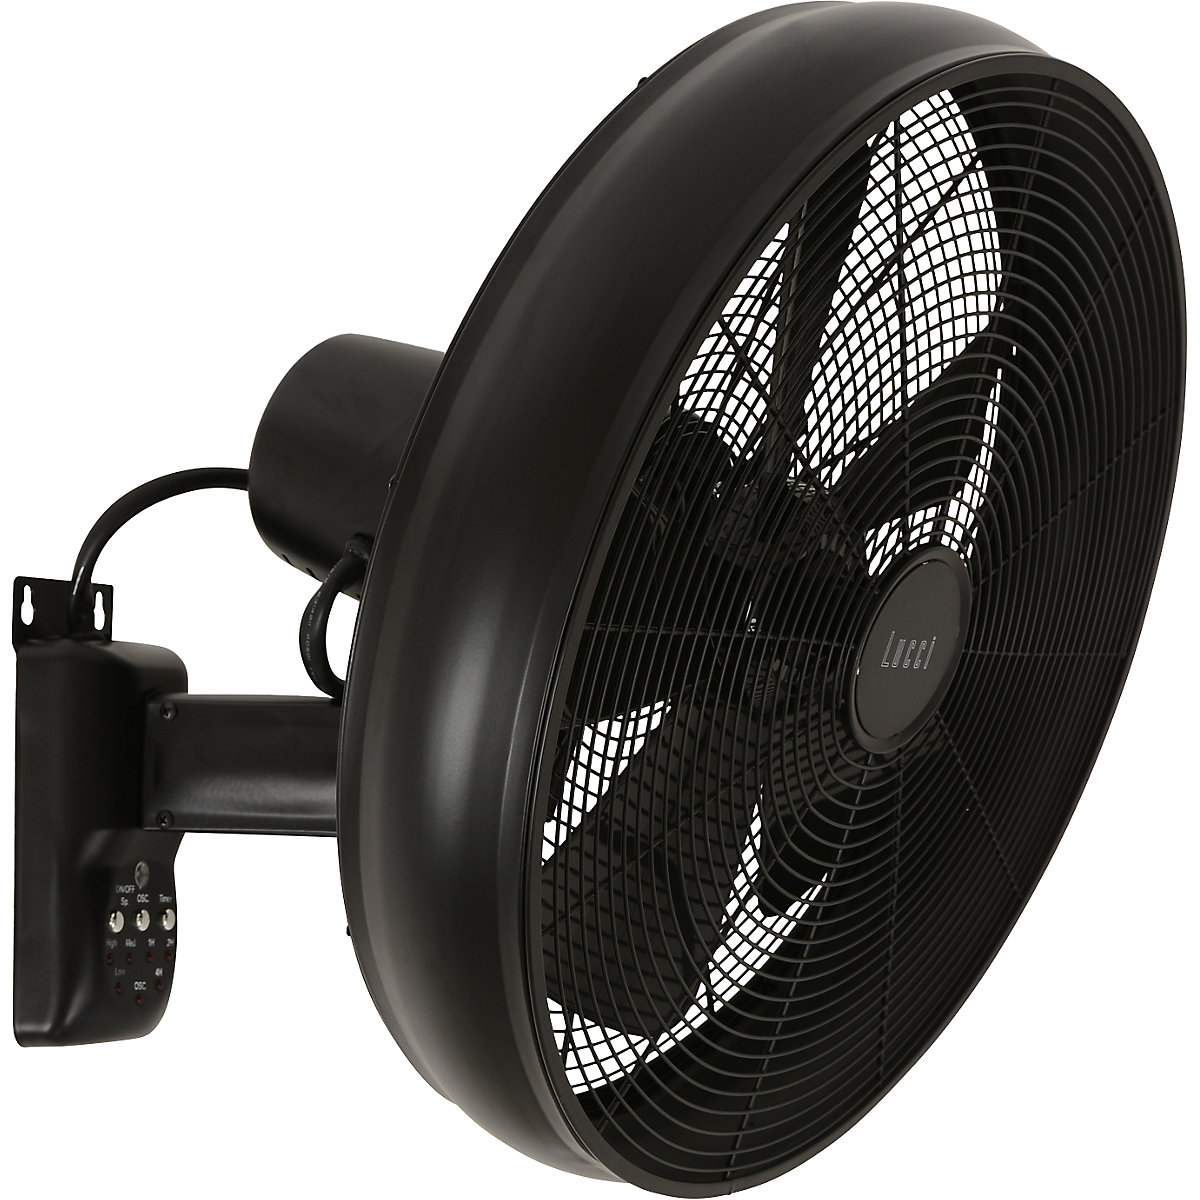 Wall Fan With Remote Control Hxwxd 460, Best Outdoor Oscillating Fan Wall Mountain Bike